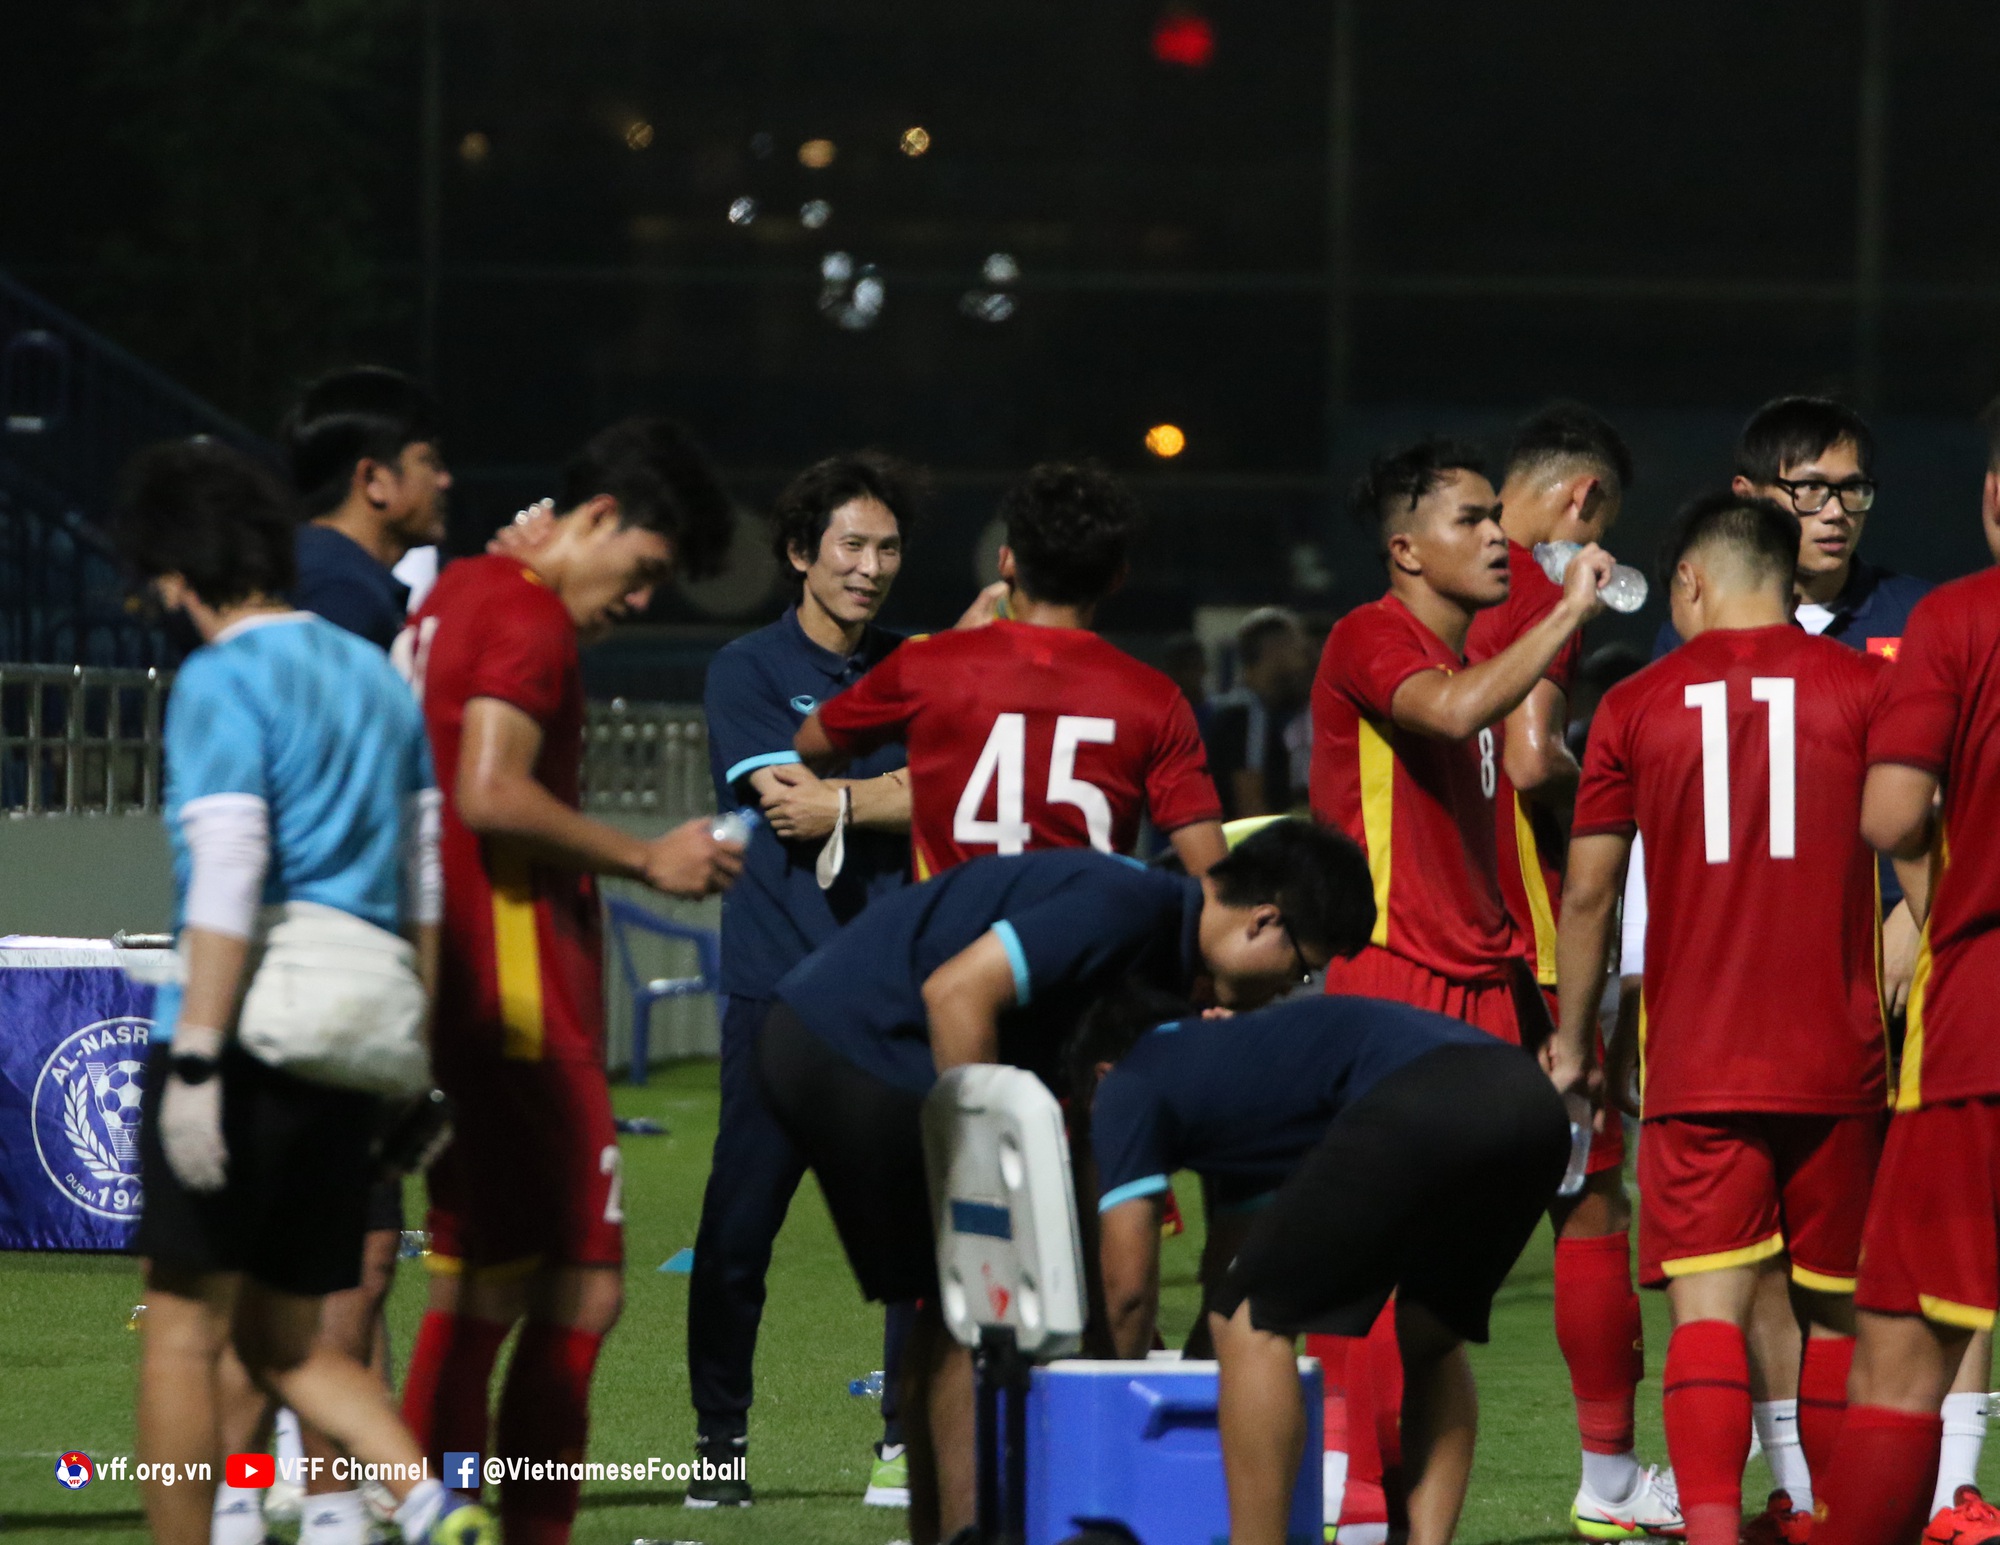 Danh sách U23 Việt Nam dự VCK U23 châu Á 2022: Sao trẻ HAGL bị loại - Ảnh 1.